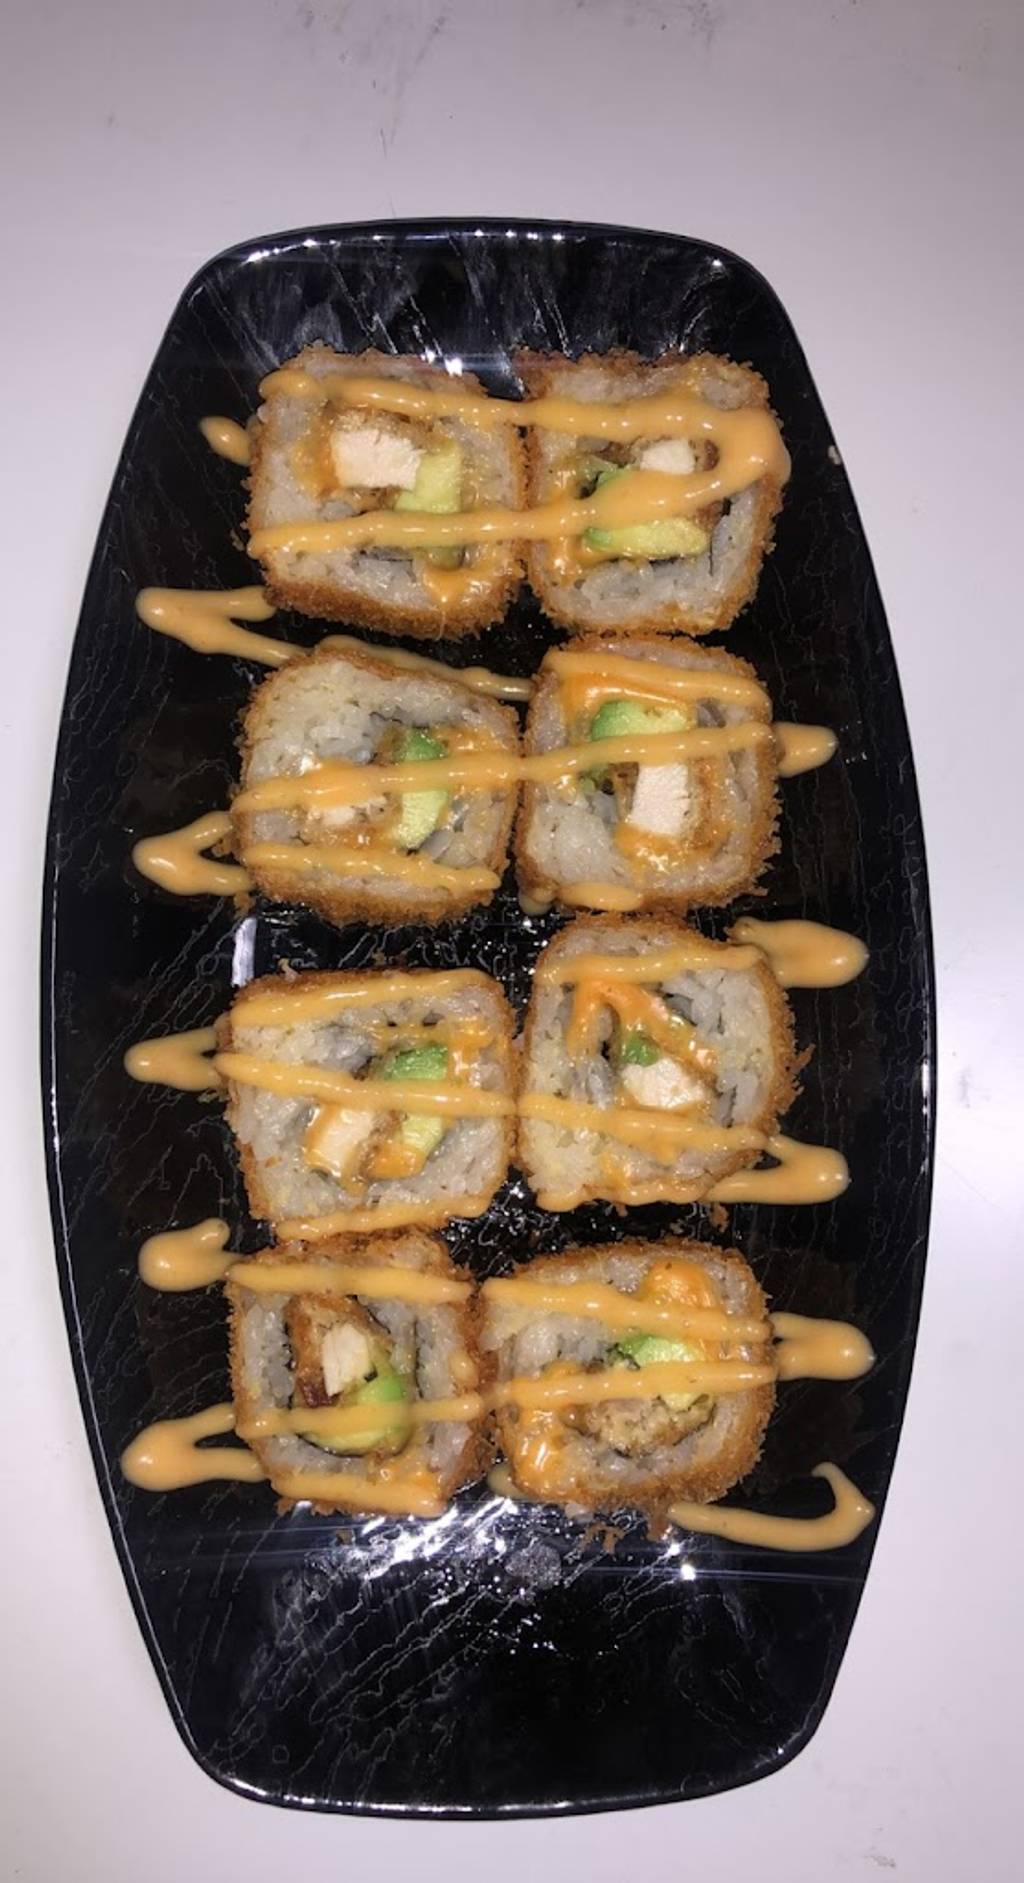 Sushi One Lyon - Food Ingredient Kitchen appliance Recipe Deep frying